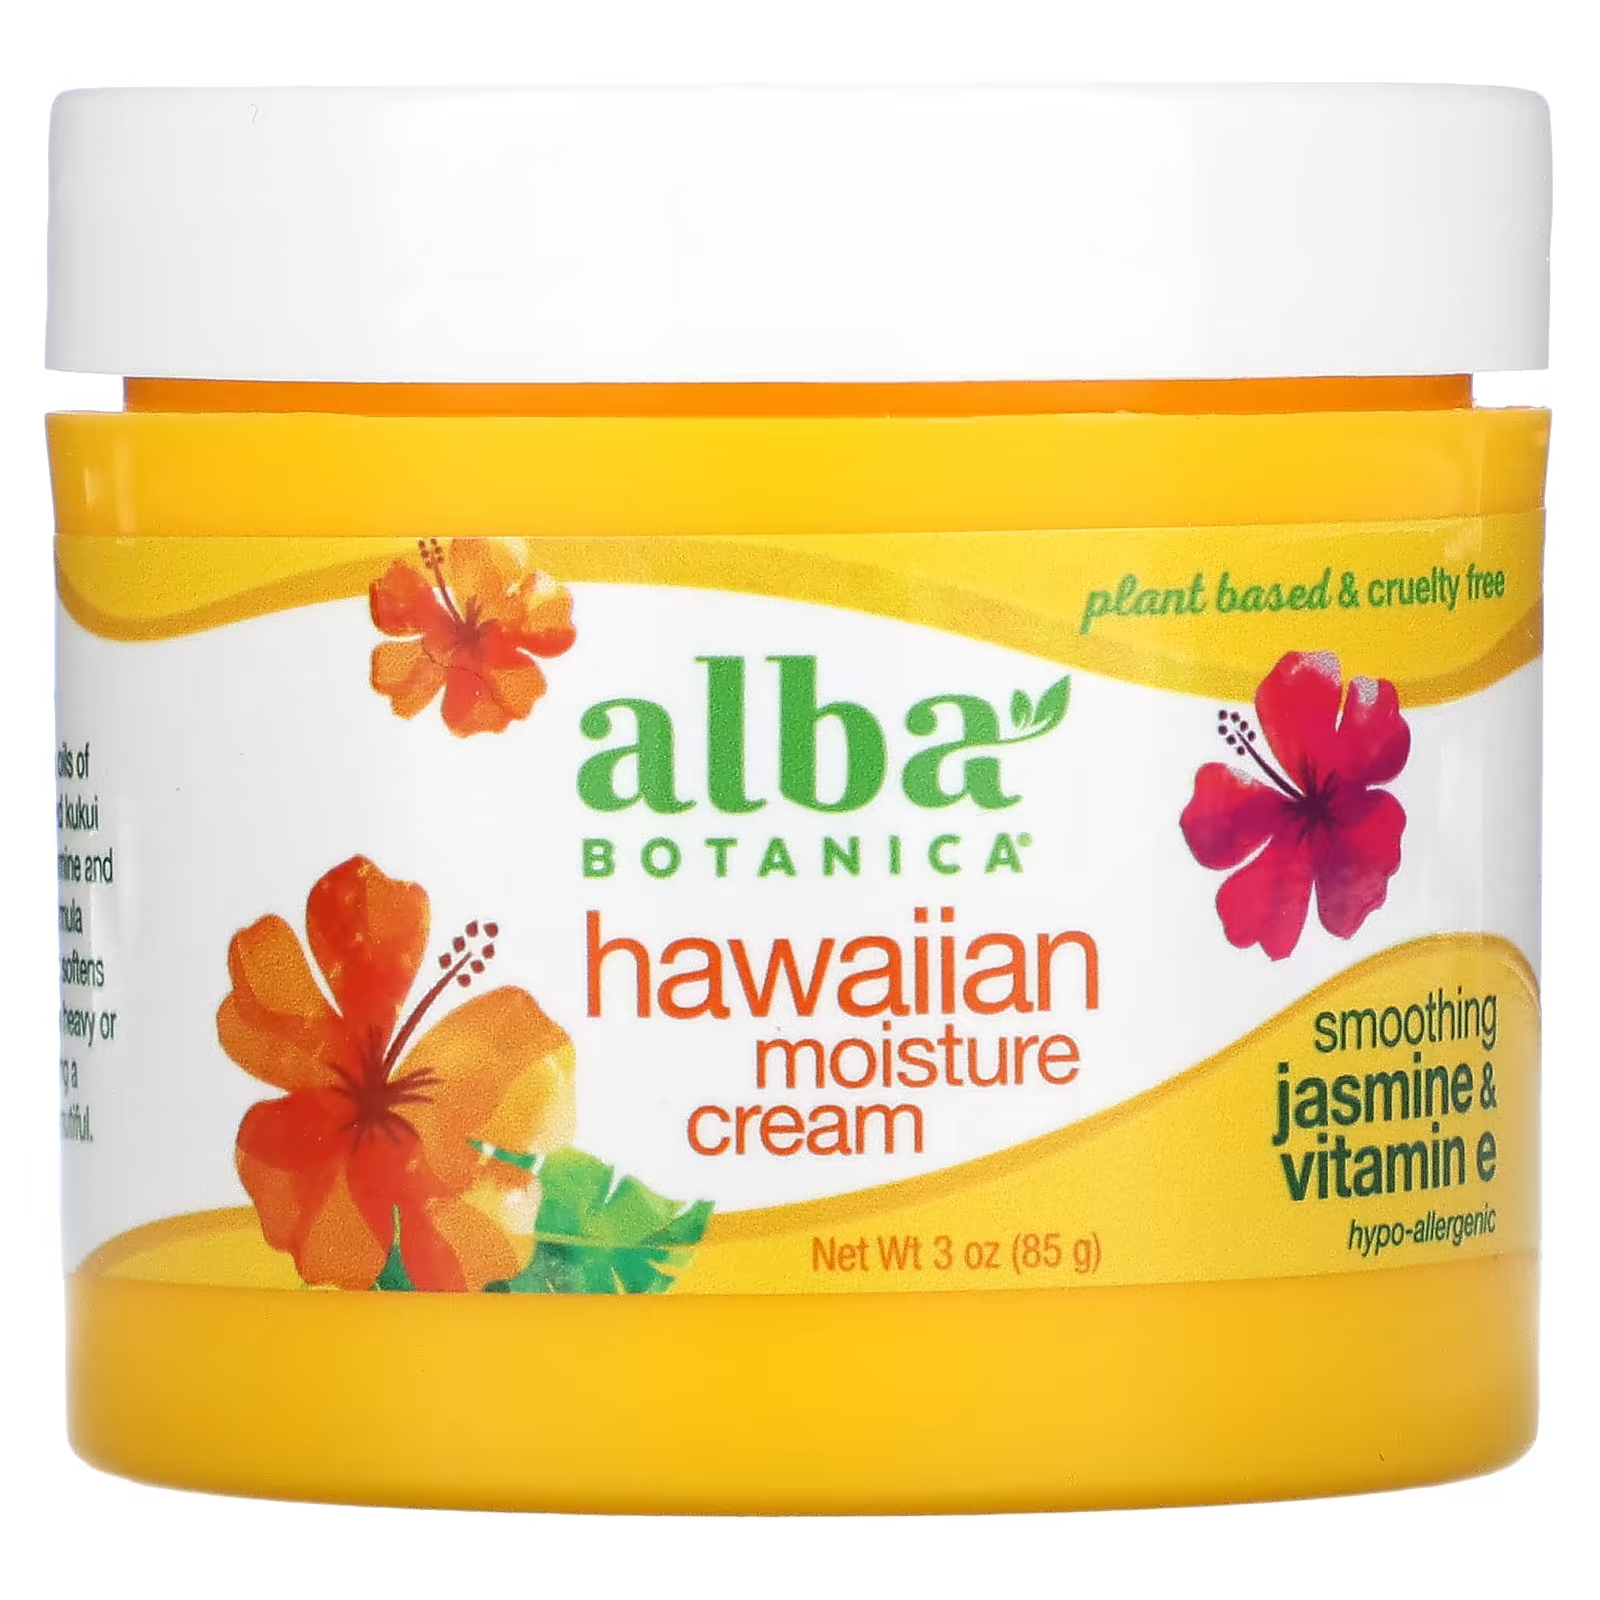 Крем увлажняющий Alba Botanica с жасмином и витамином Е, 85 г alba botanica hawaiian moisture cream увлажняющий крем с жасмином и витамином e 85 г 3 унции